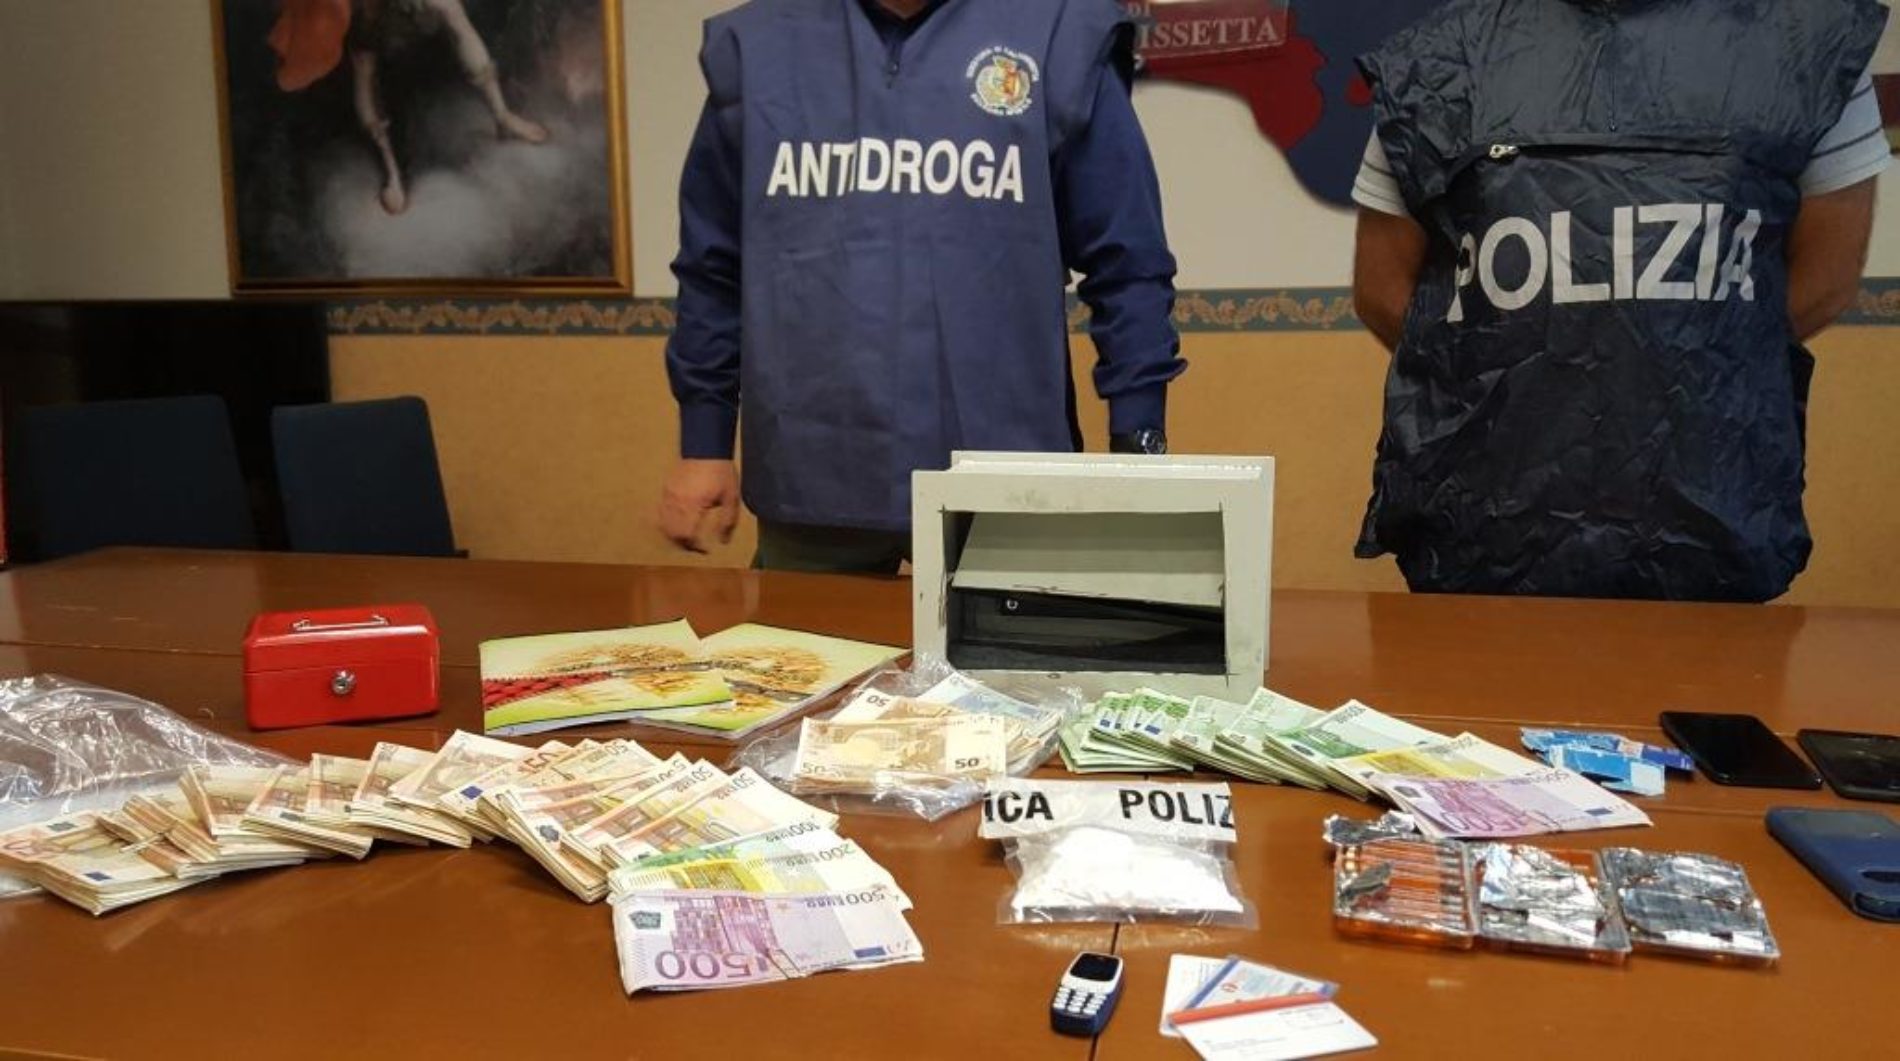 Caltanissetta, operazione antidroga della Polizia di Stato, sequestrati 83 grammi di cocaina e 94mila euro in contanti, due arresti. Lo spaccio della sostanza tagliata avrebbe fruttato 40mila euro